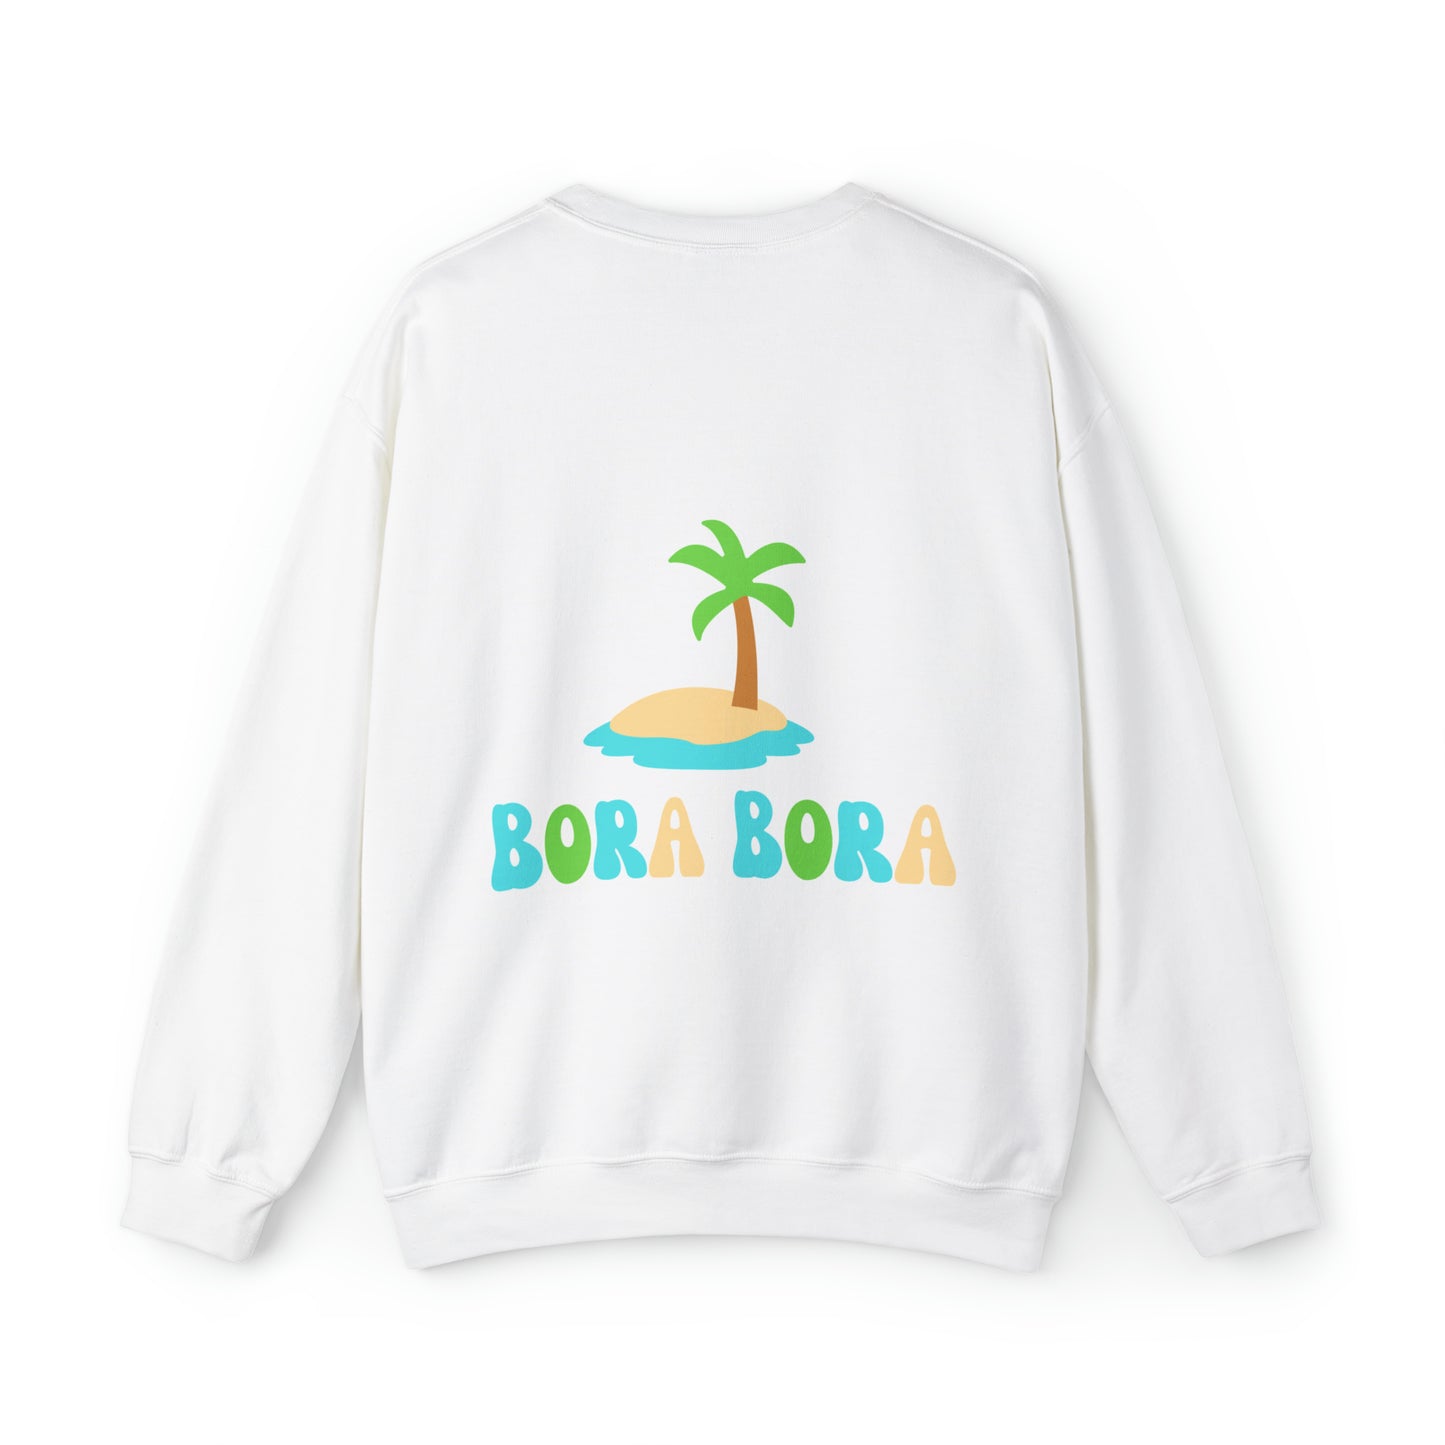 Bora Bora sweatshirt